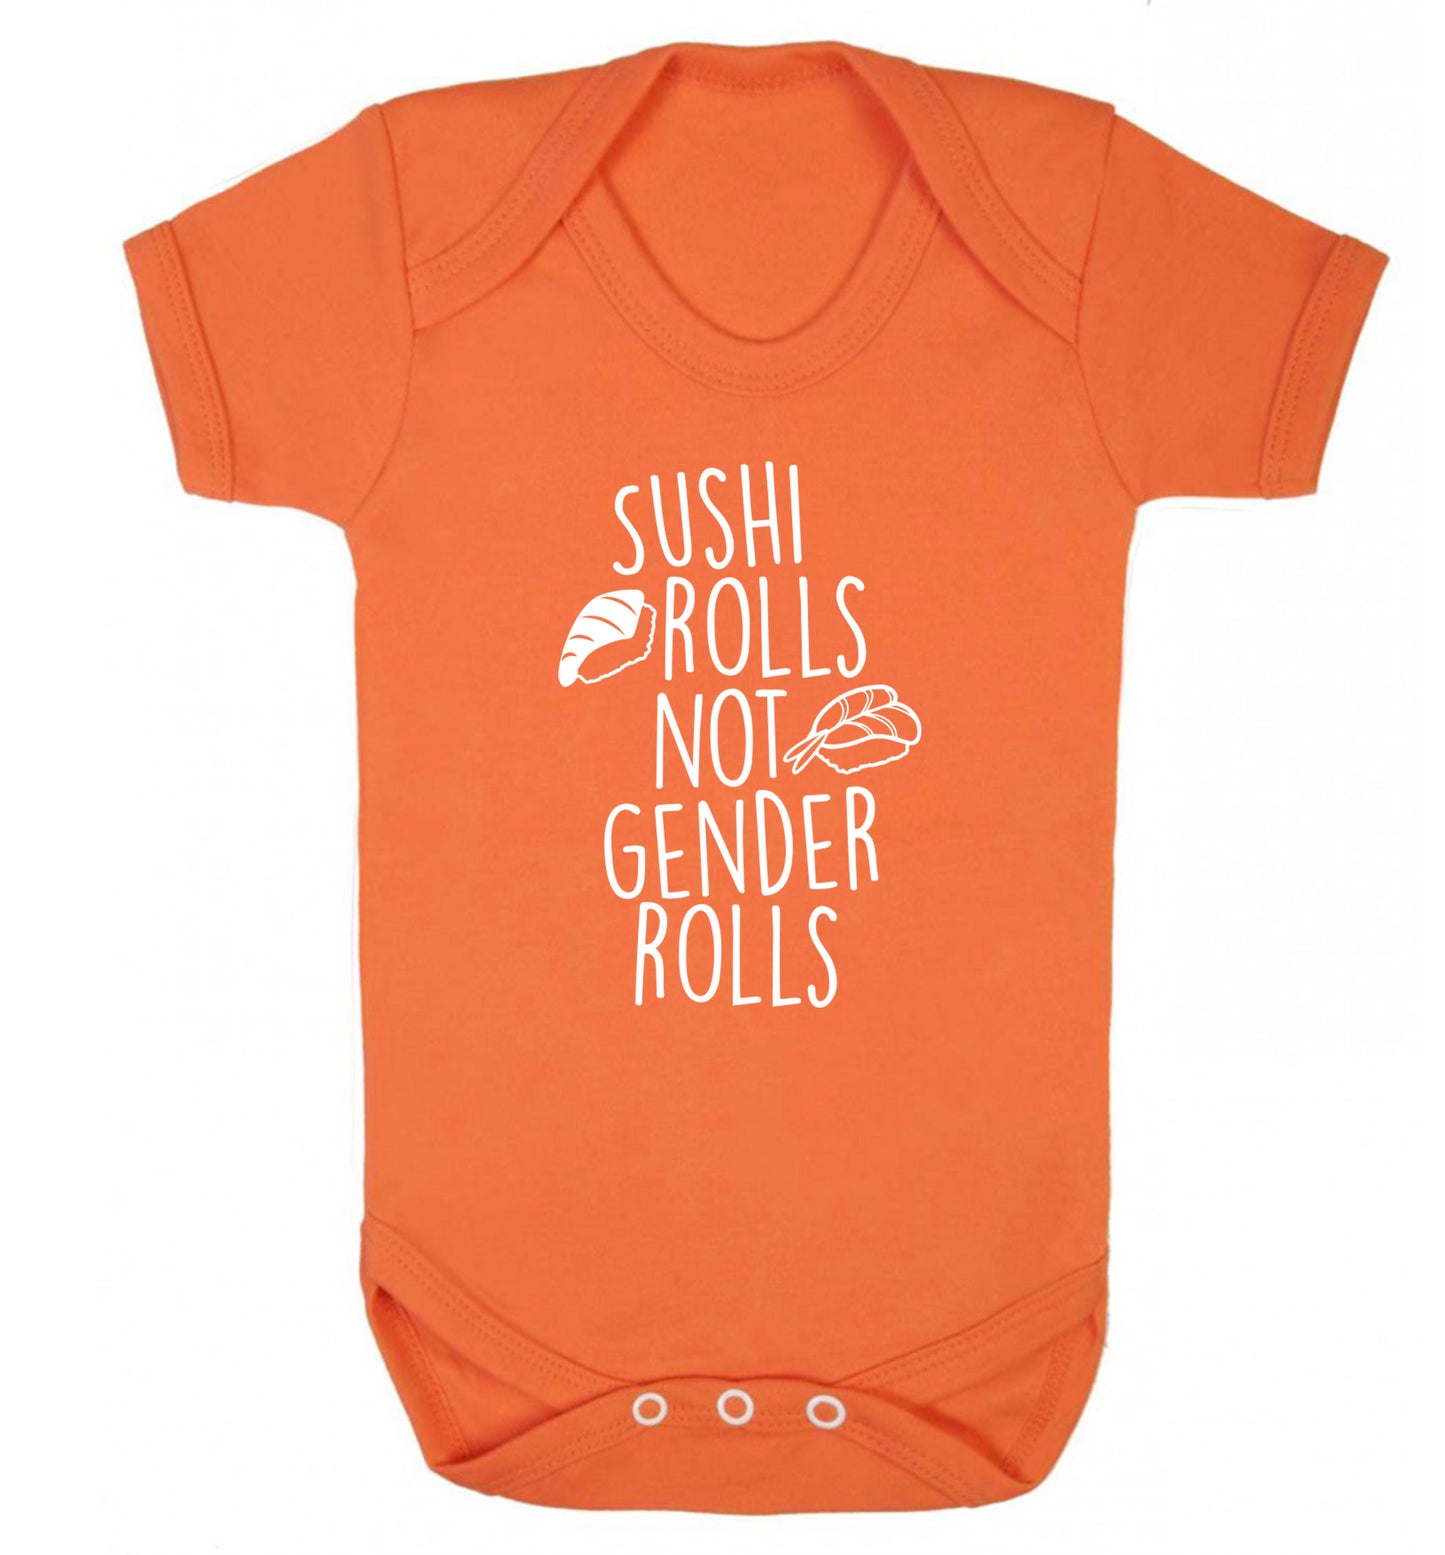 Sushi rolls not gender rolls Baby Vest orange 18-24 months